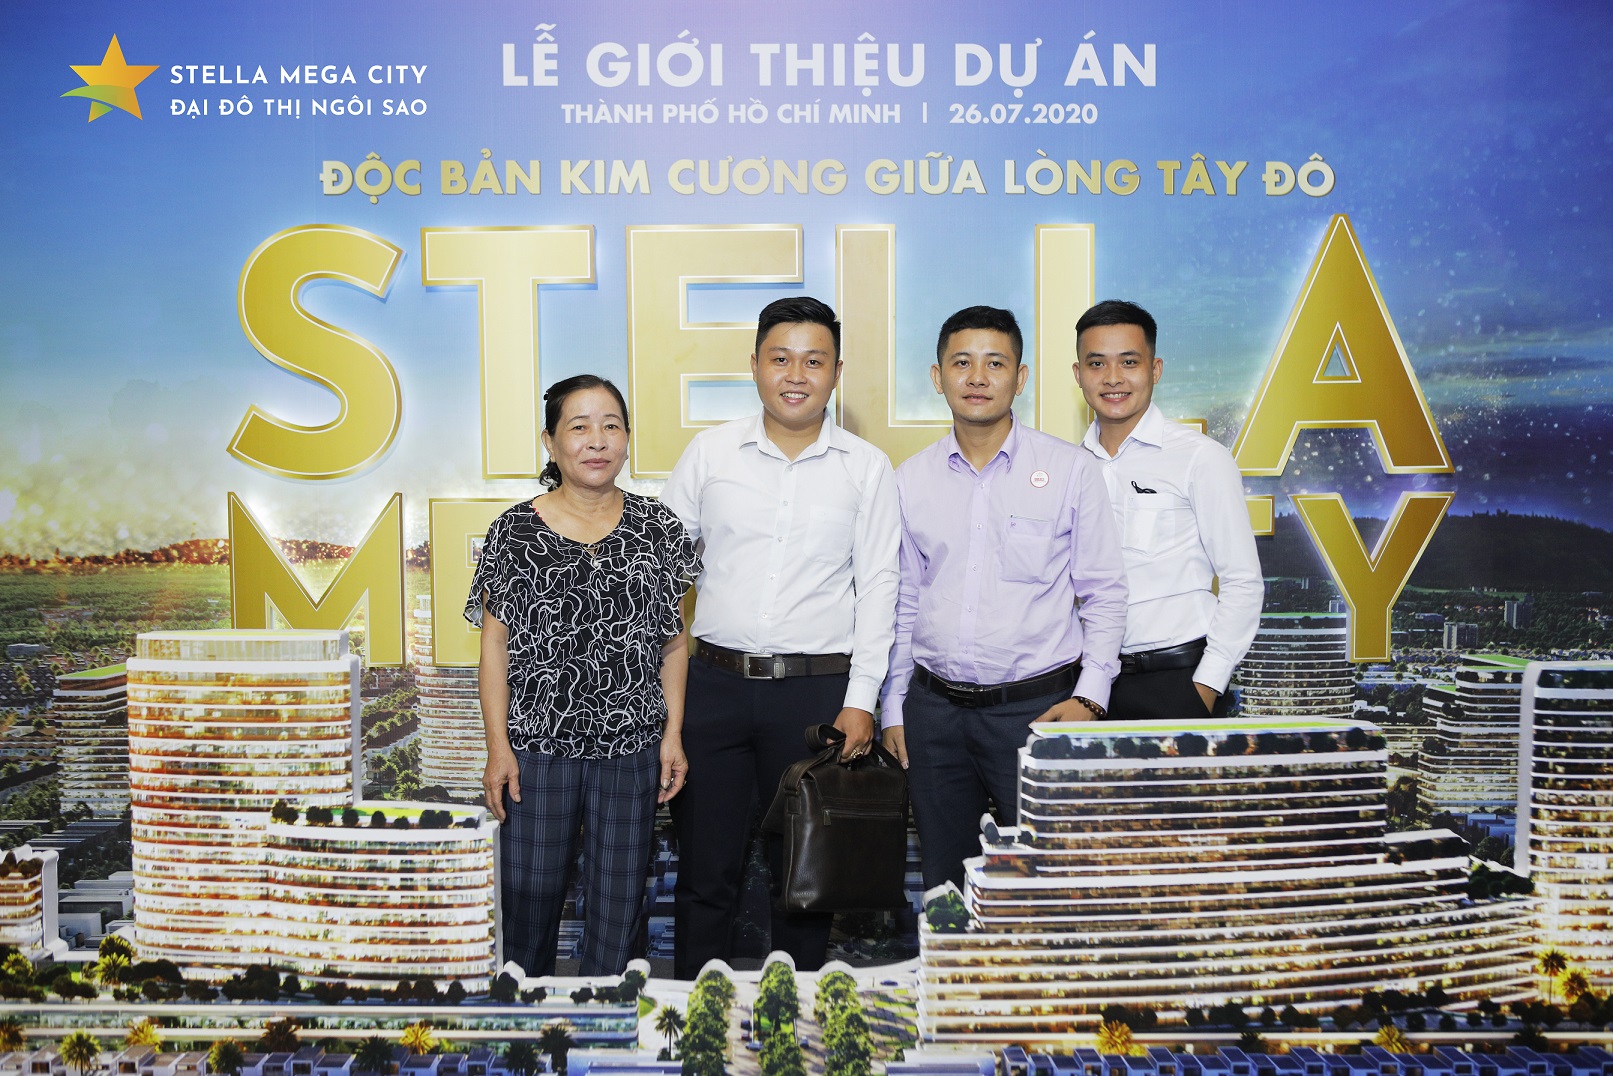 KITA Group chính thức giới thiệu Stella Mega City đến khách hàng